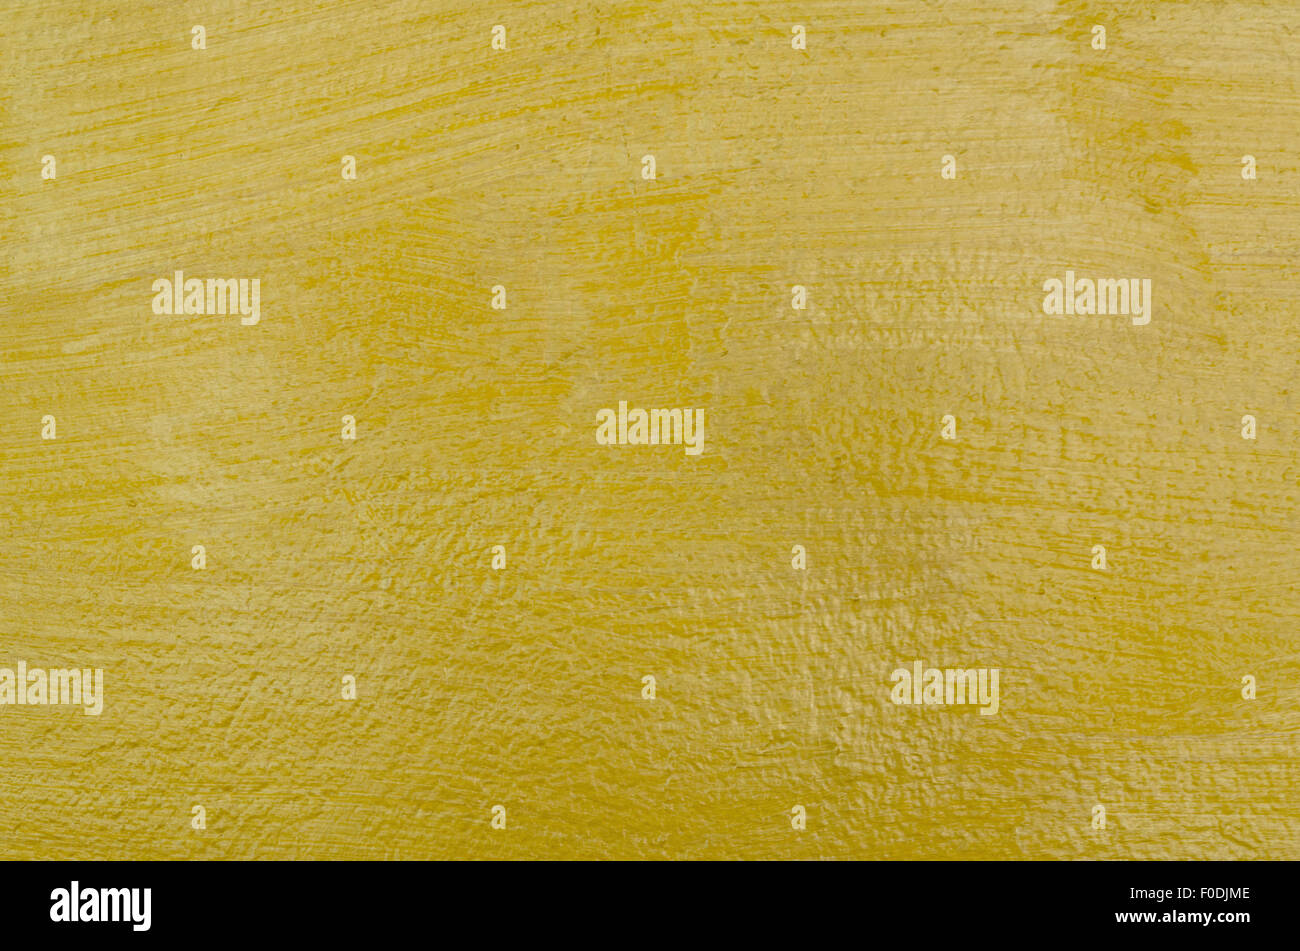 Beautiful gold background Stock Photo - Alamy